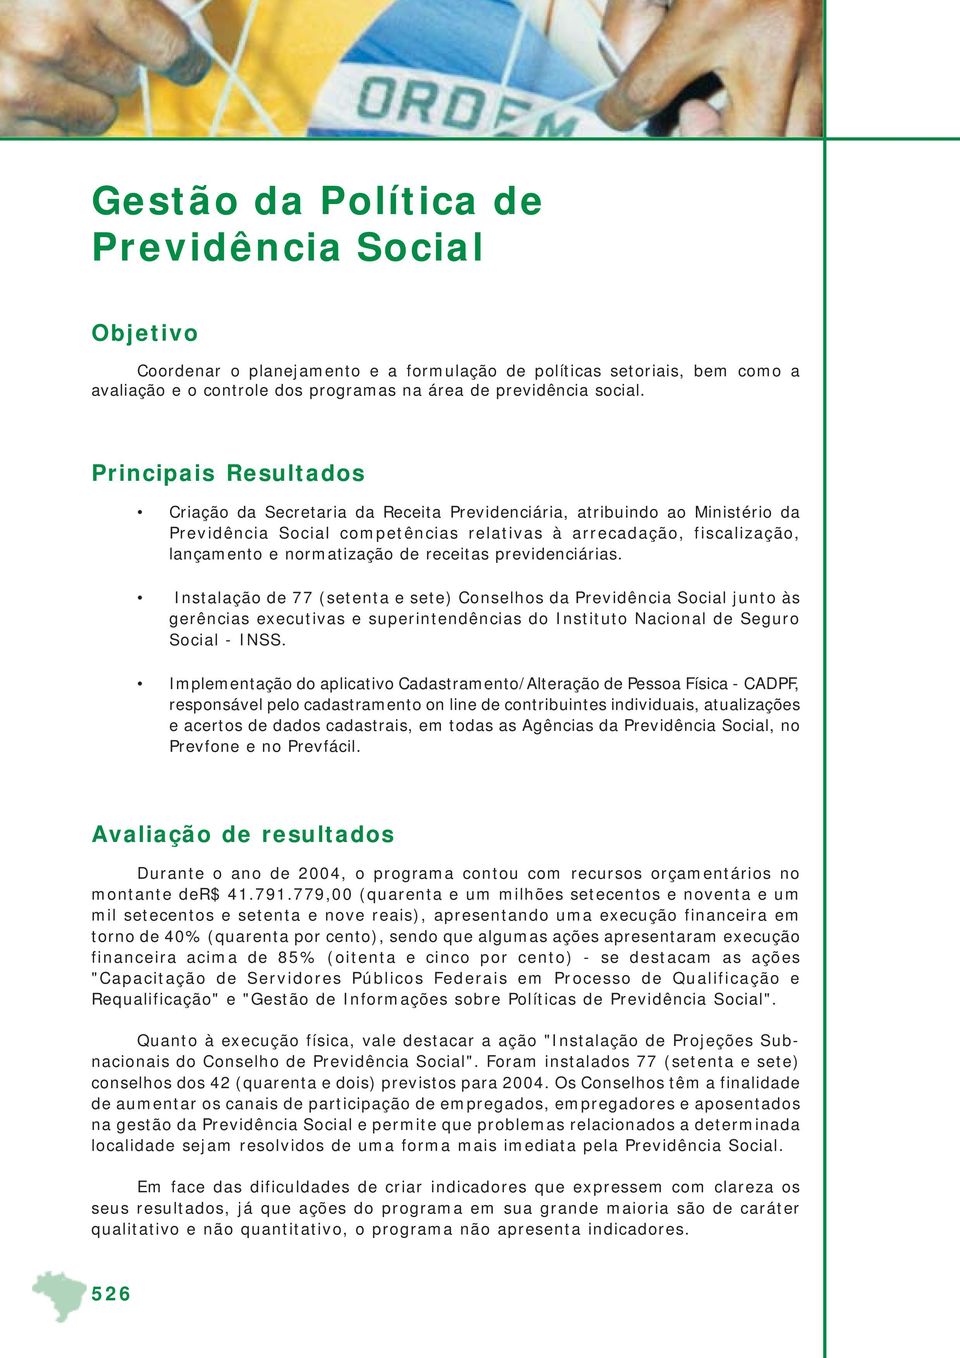 receitas previdenciárias. Instalação de 77 (setenta e sete) Conselhos da Previdência Social junto às gerências executivas e superintendências do Instituto Nacional de Seguro Social - INSS.